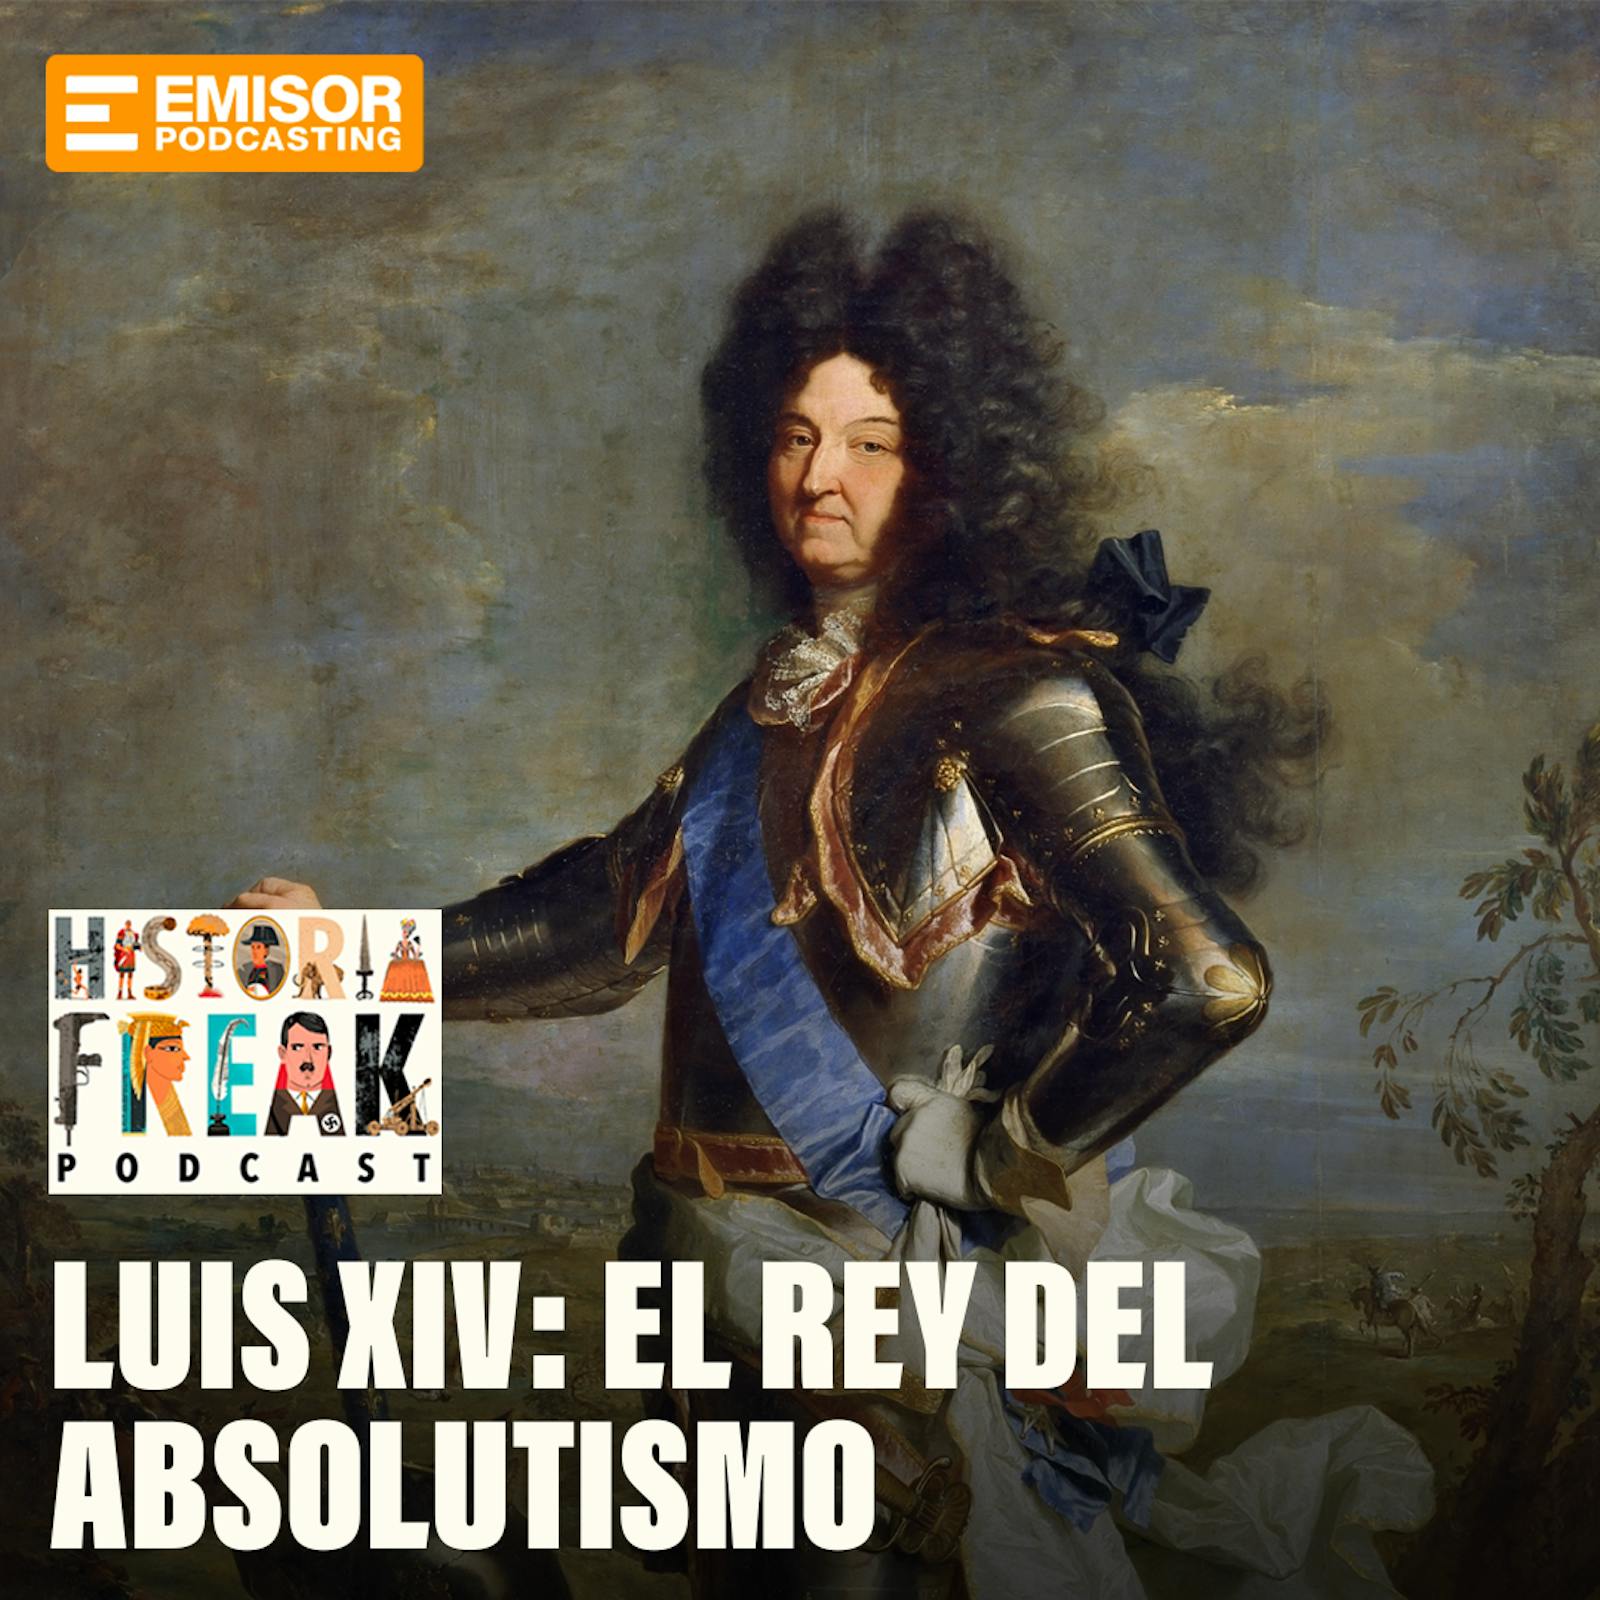 Luis XIV: El Rey del Absolutismo